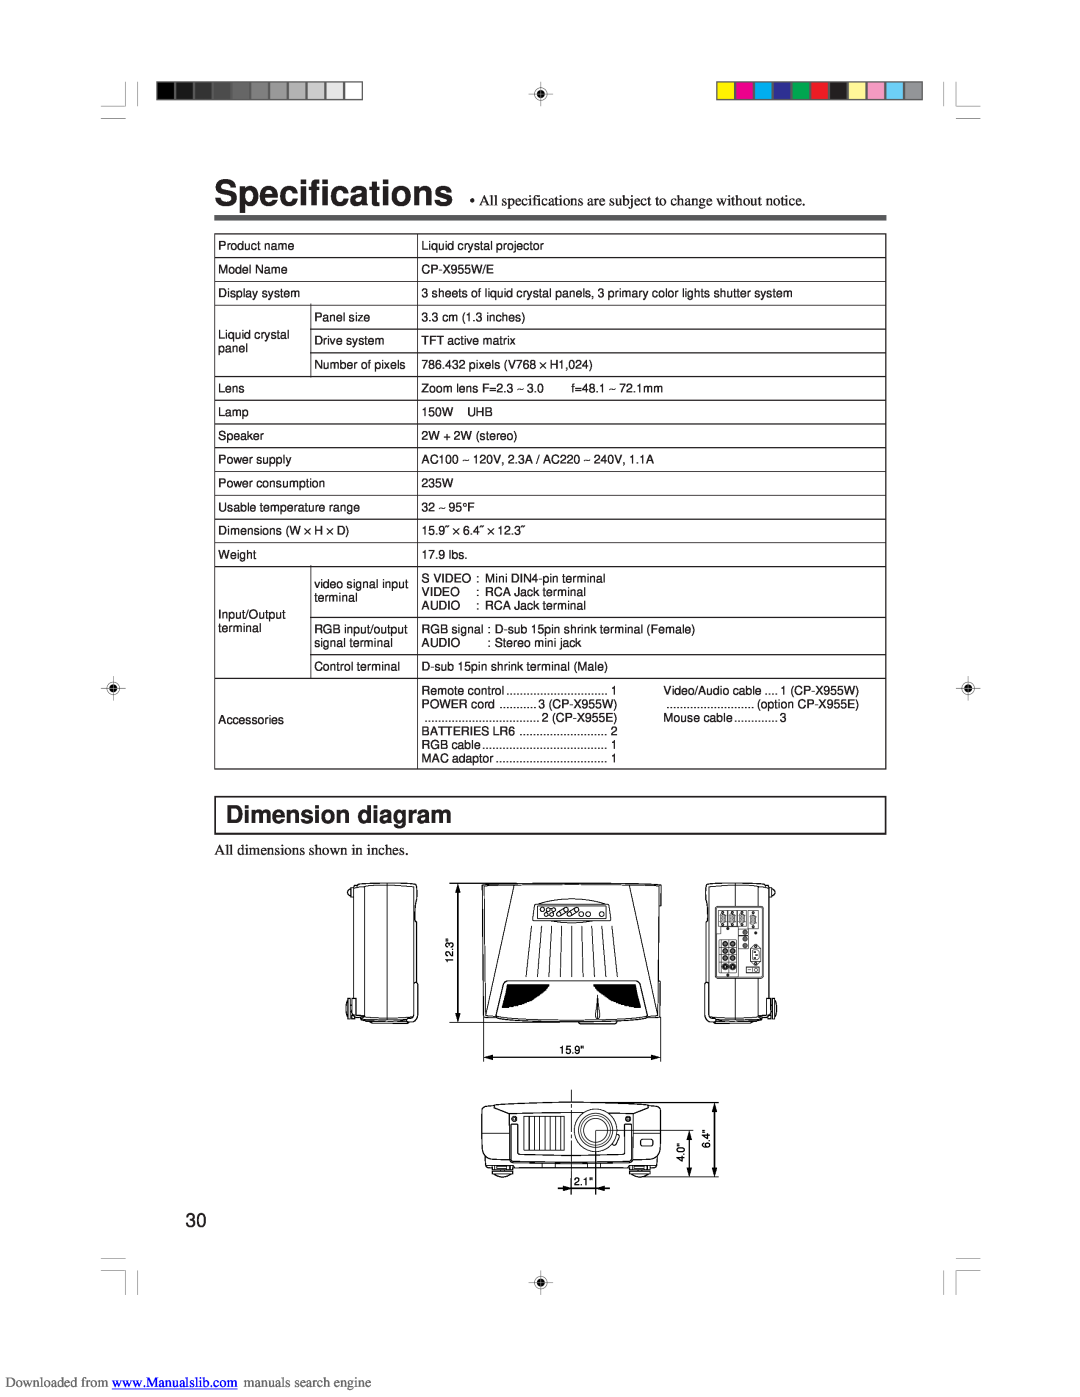 Hitachi CP-X955E specifications Dimension diagram, All dimensions shown in inches 